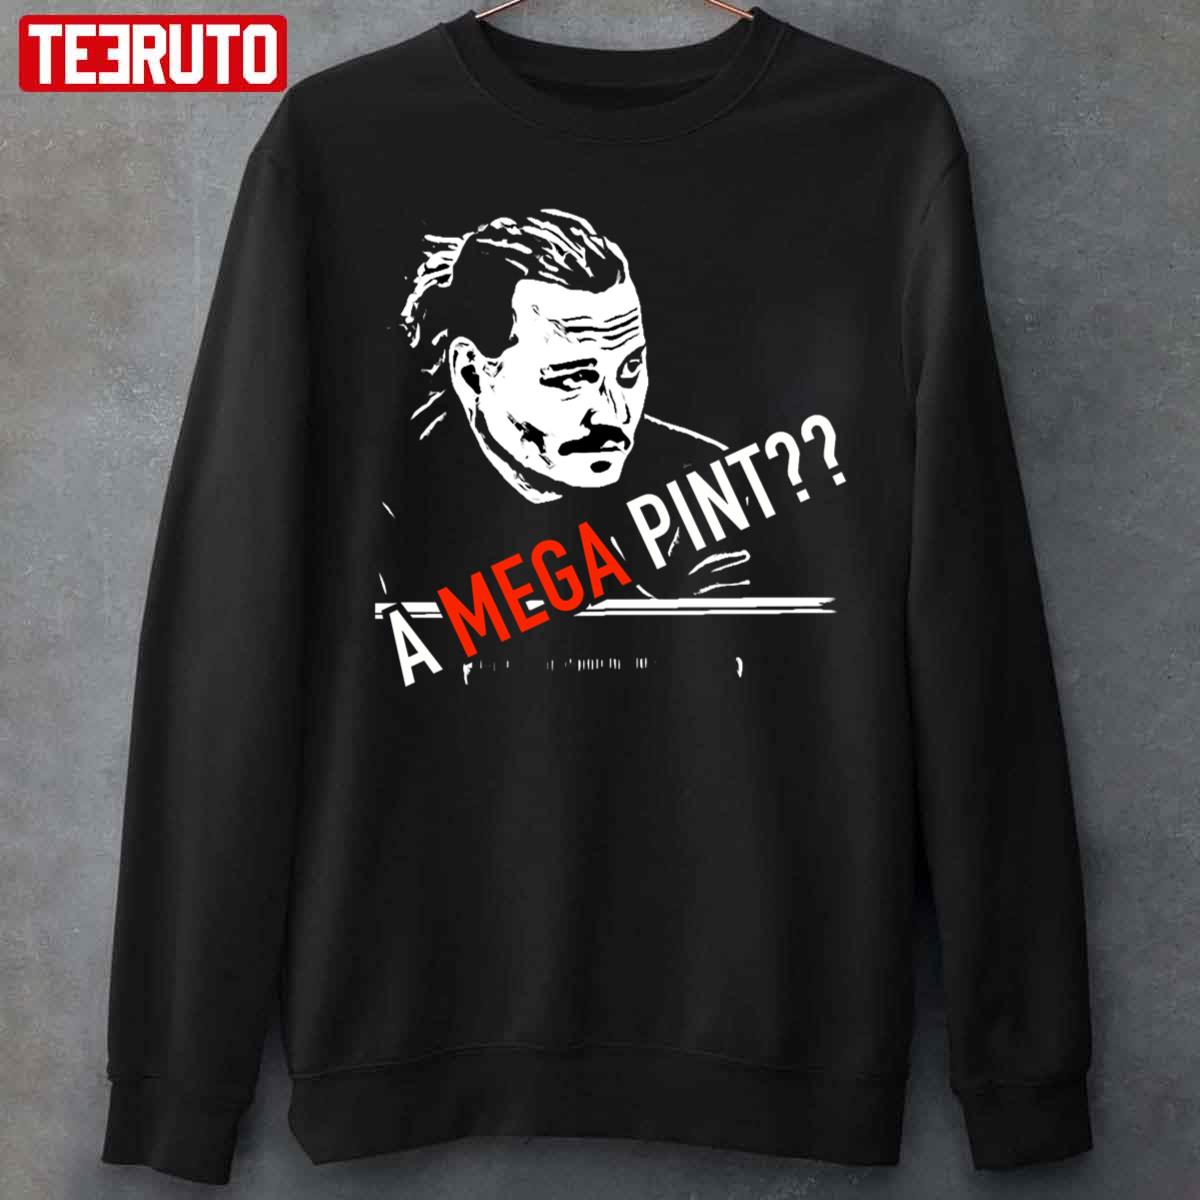 A Mega Pint Johnny Depp Unisex T-Shirt